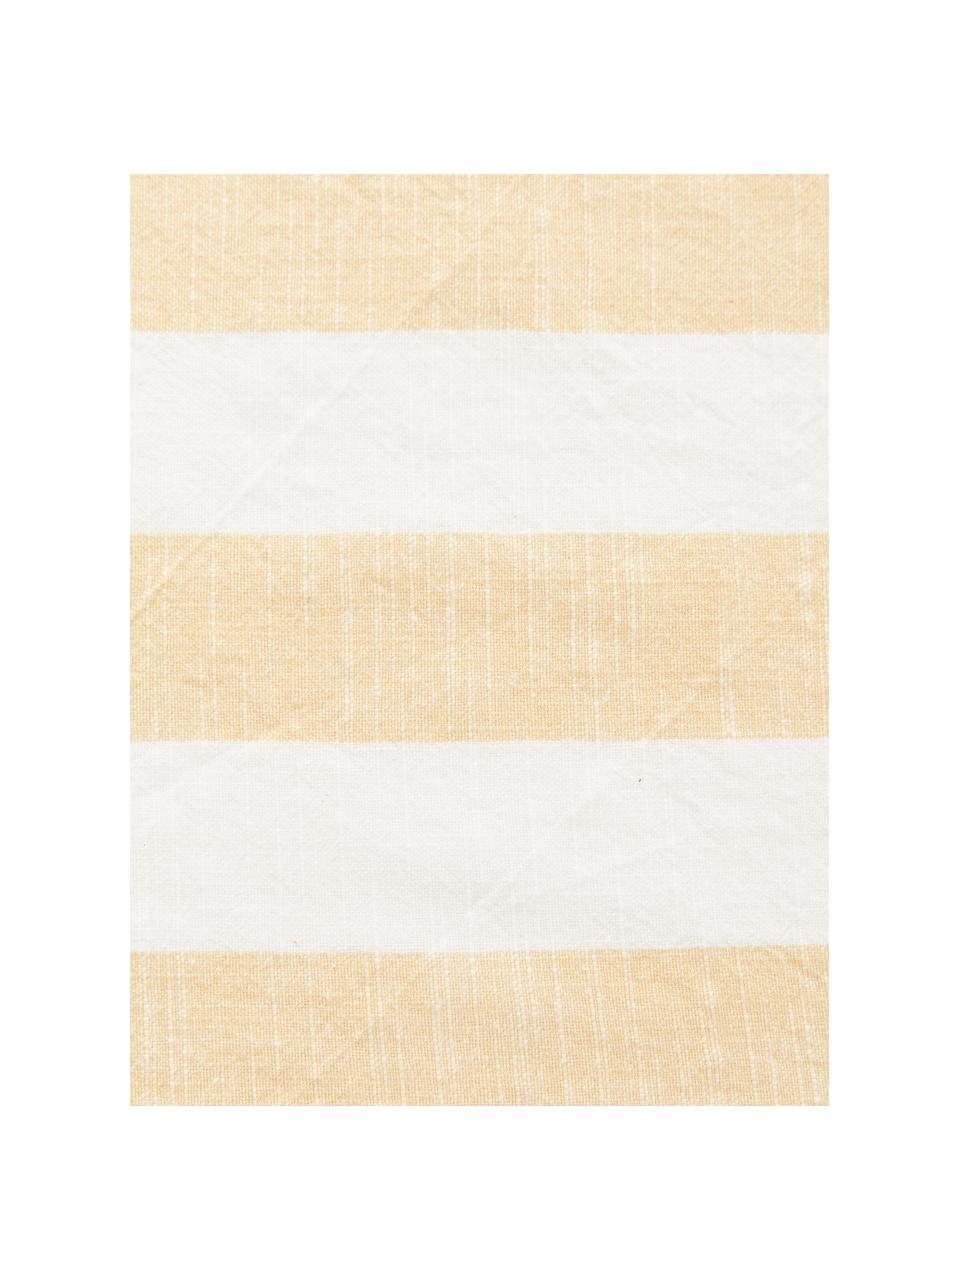 Serviettes de table coton Strip, 2 pièces, Coton, Jaune, blanc, larg. 45 x long. 45 cm